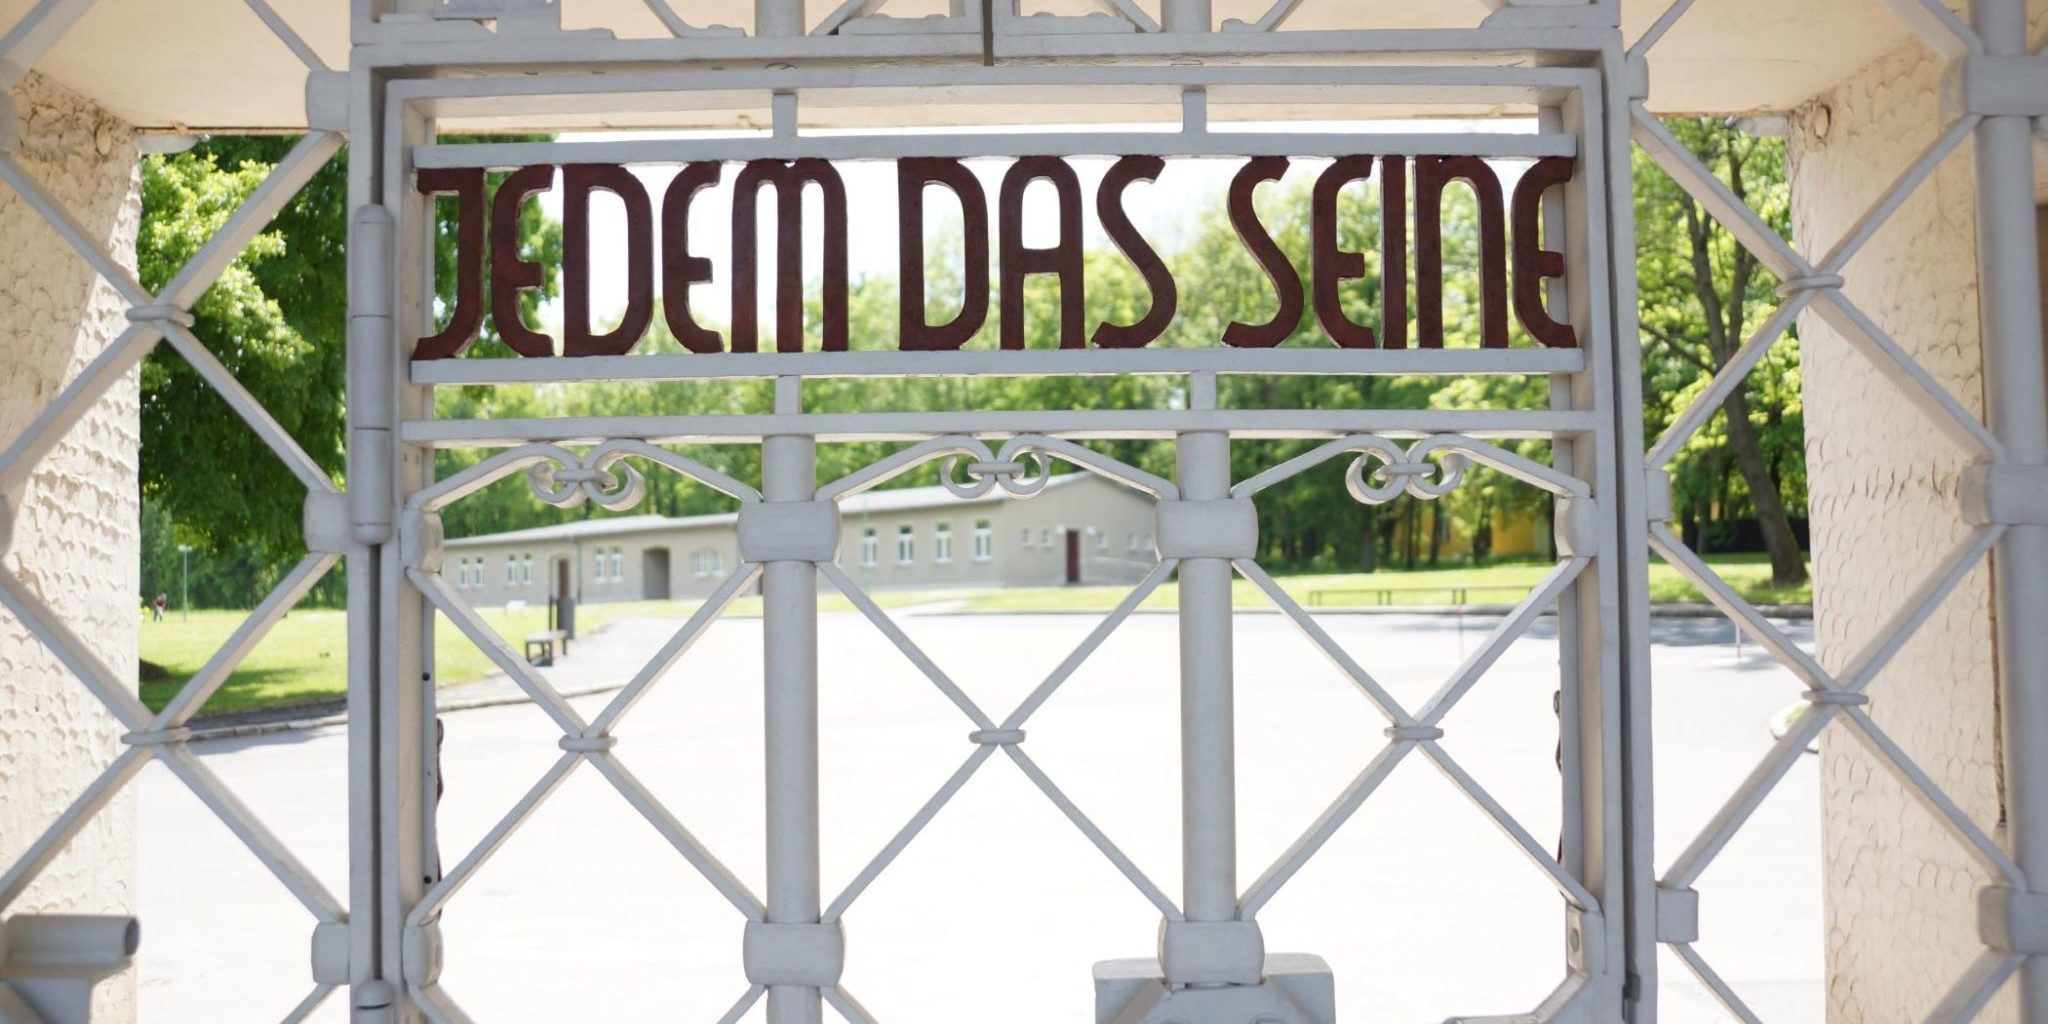 Lagertor des ehemaligen Konzentrationslagers Buchenwald mit der Inschrift: Jedem das Seine